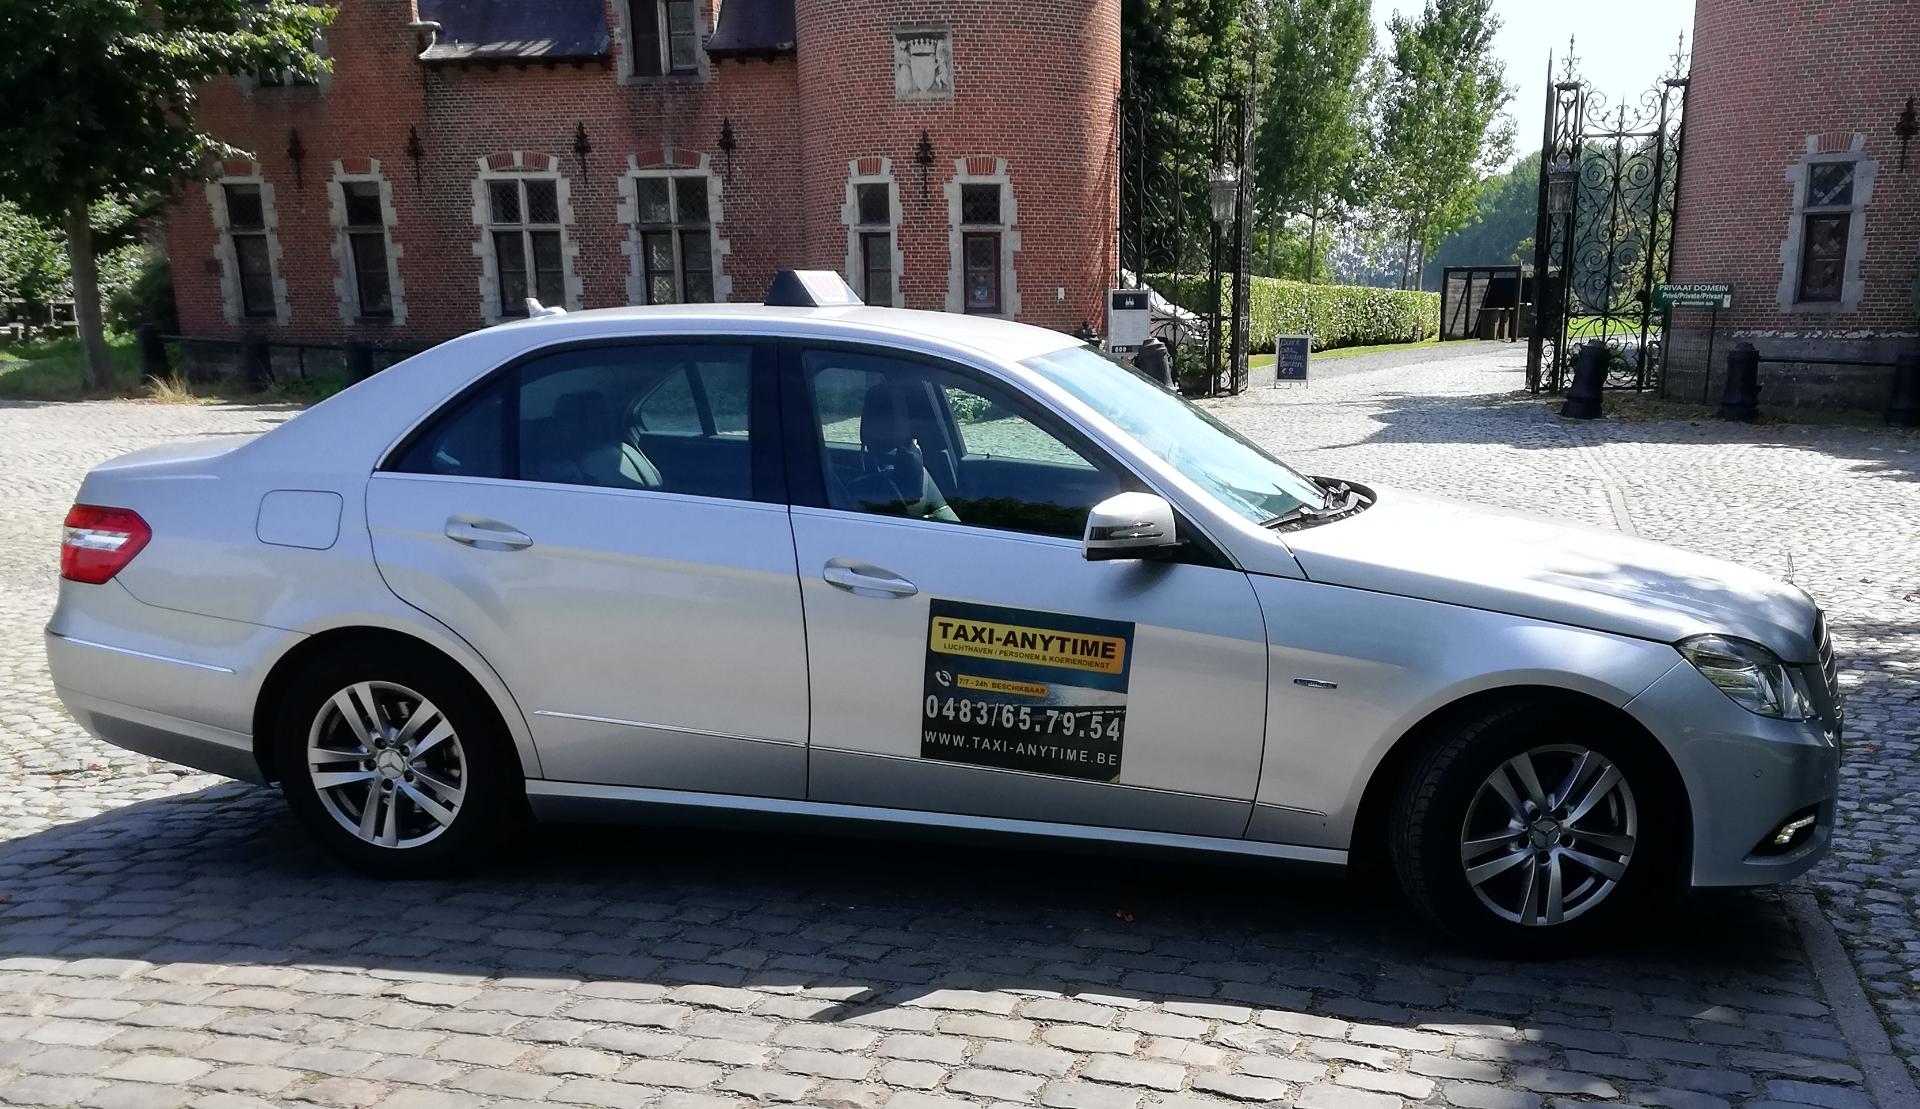 bestelwagenverhuurders Schaarbeek Taxi-Anytime